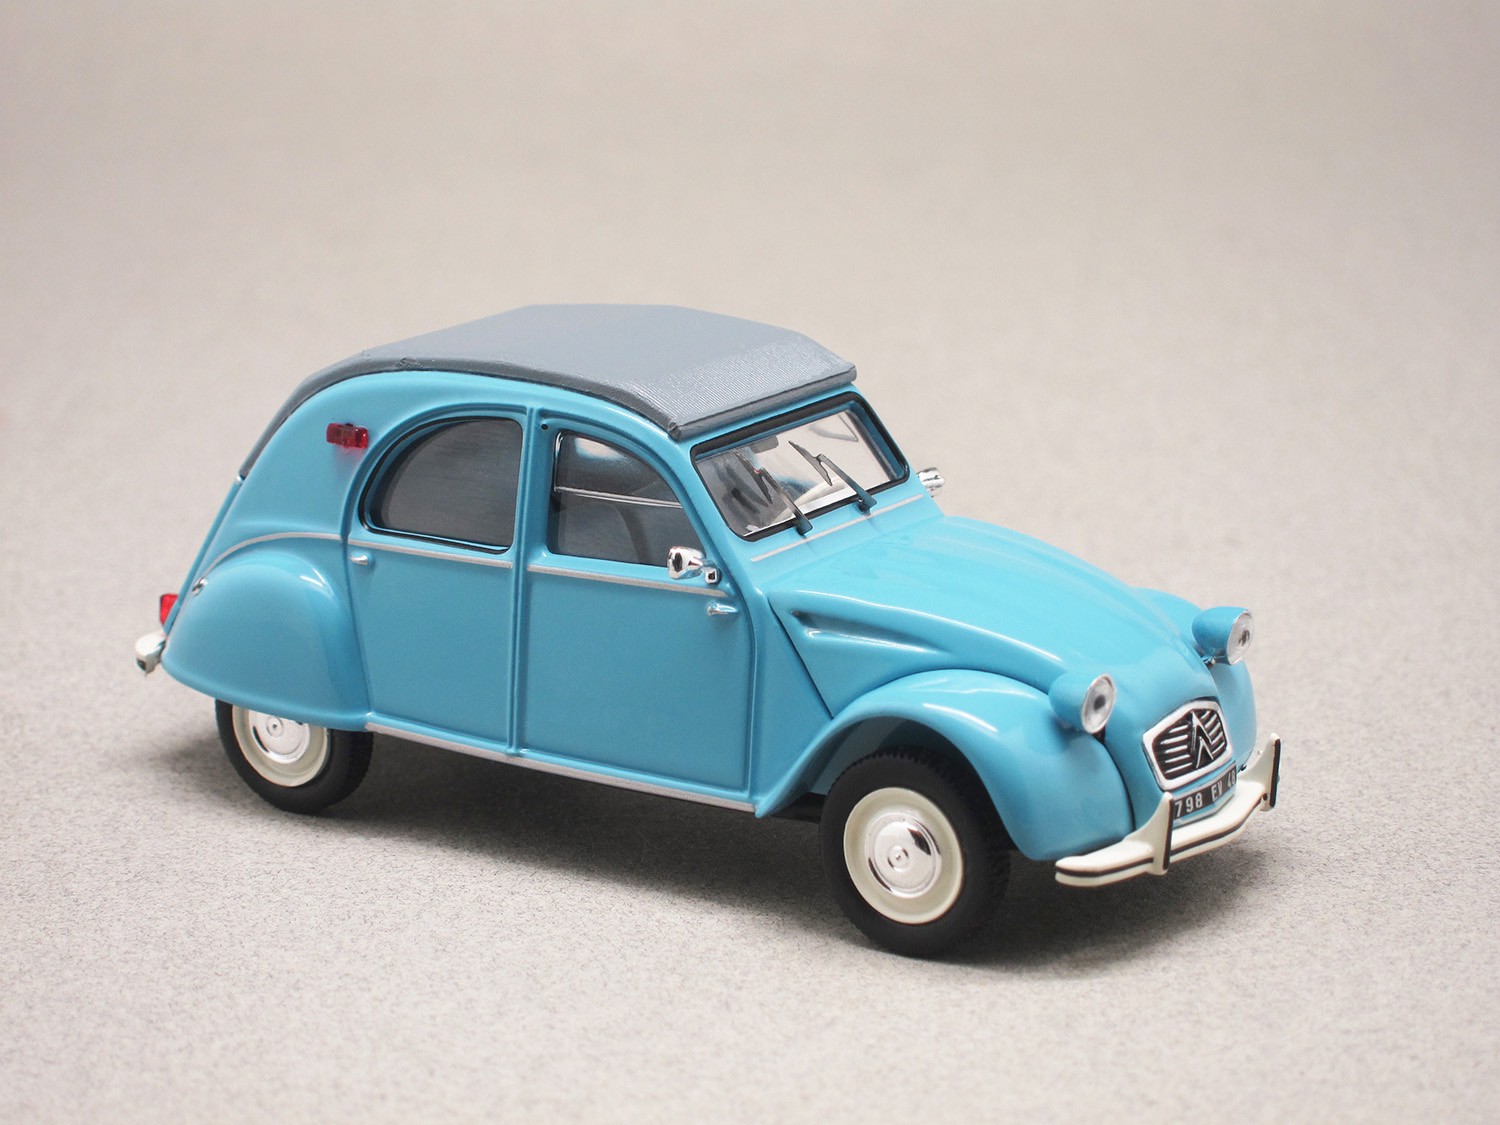 Citroën 2CV 1964 blue (Odéon) 1:43